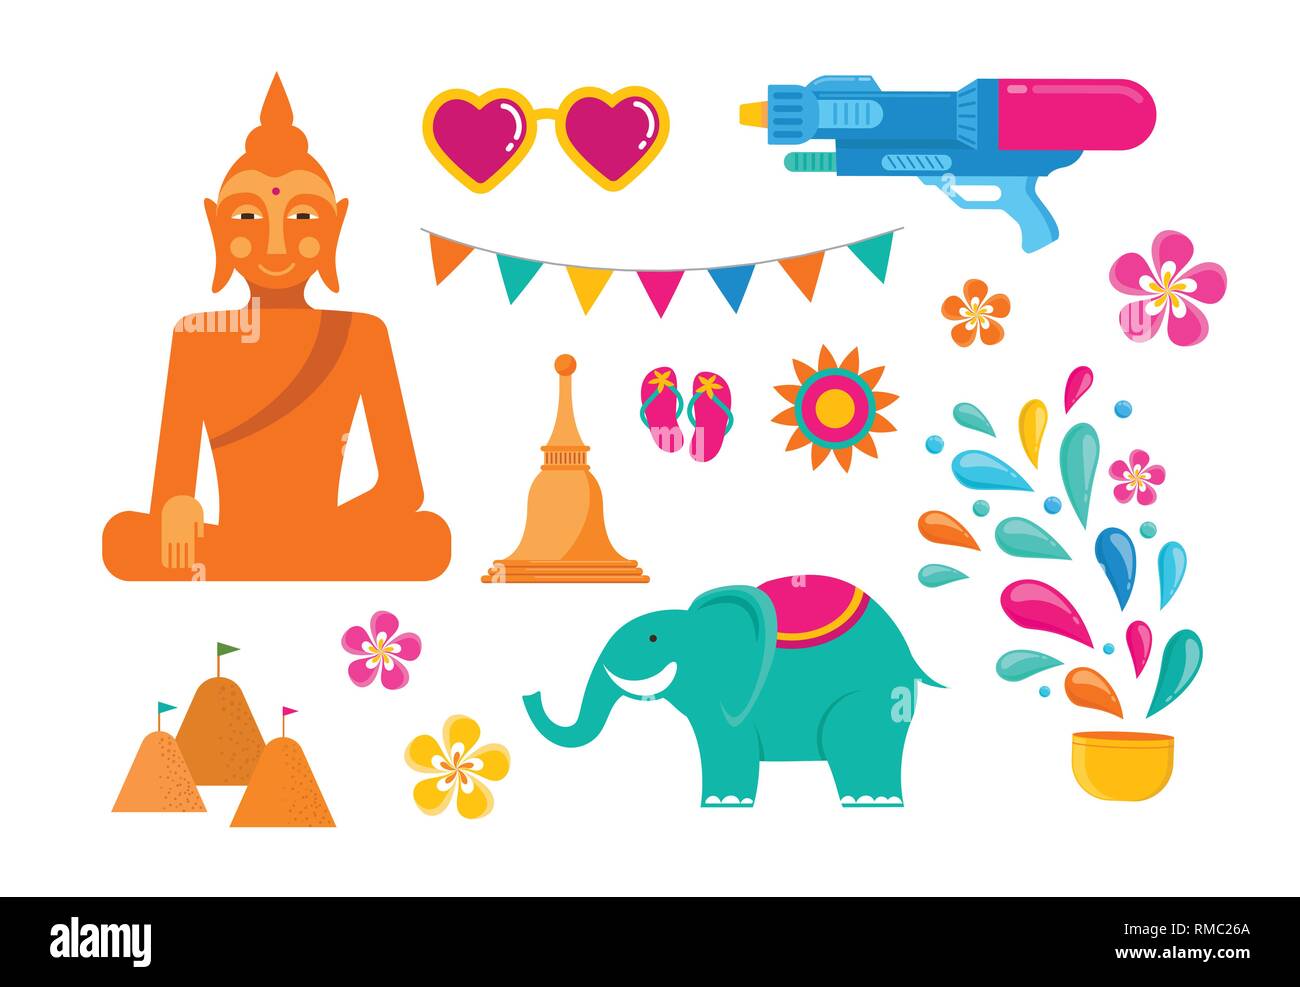 Festival Songkran - Agua en Tailandia. Año nuevo tailandés fiesta nacional. Vector colorida pancarta y antecedentes Ilustración del Vector